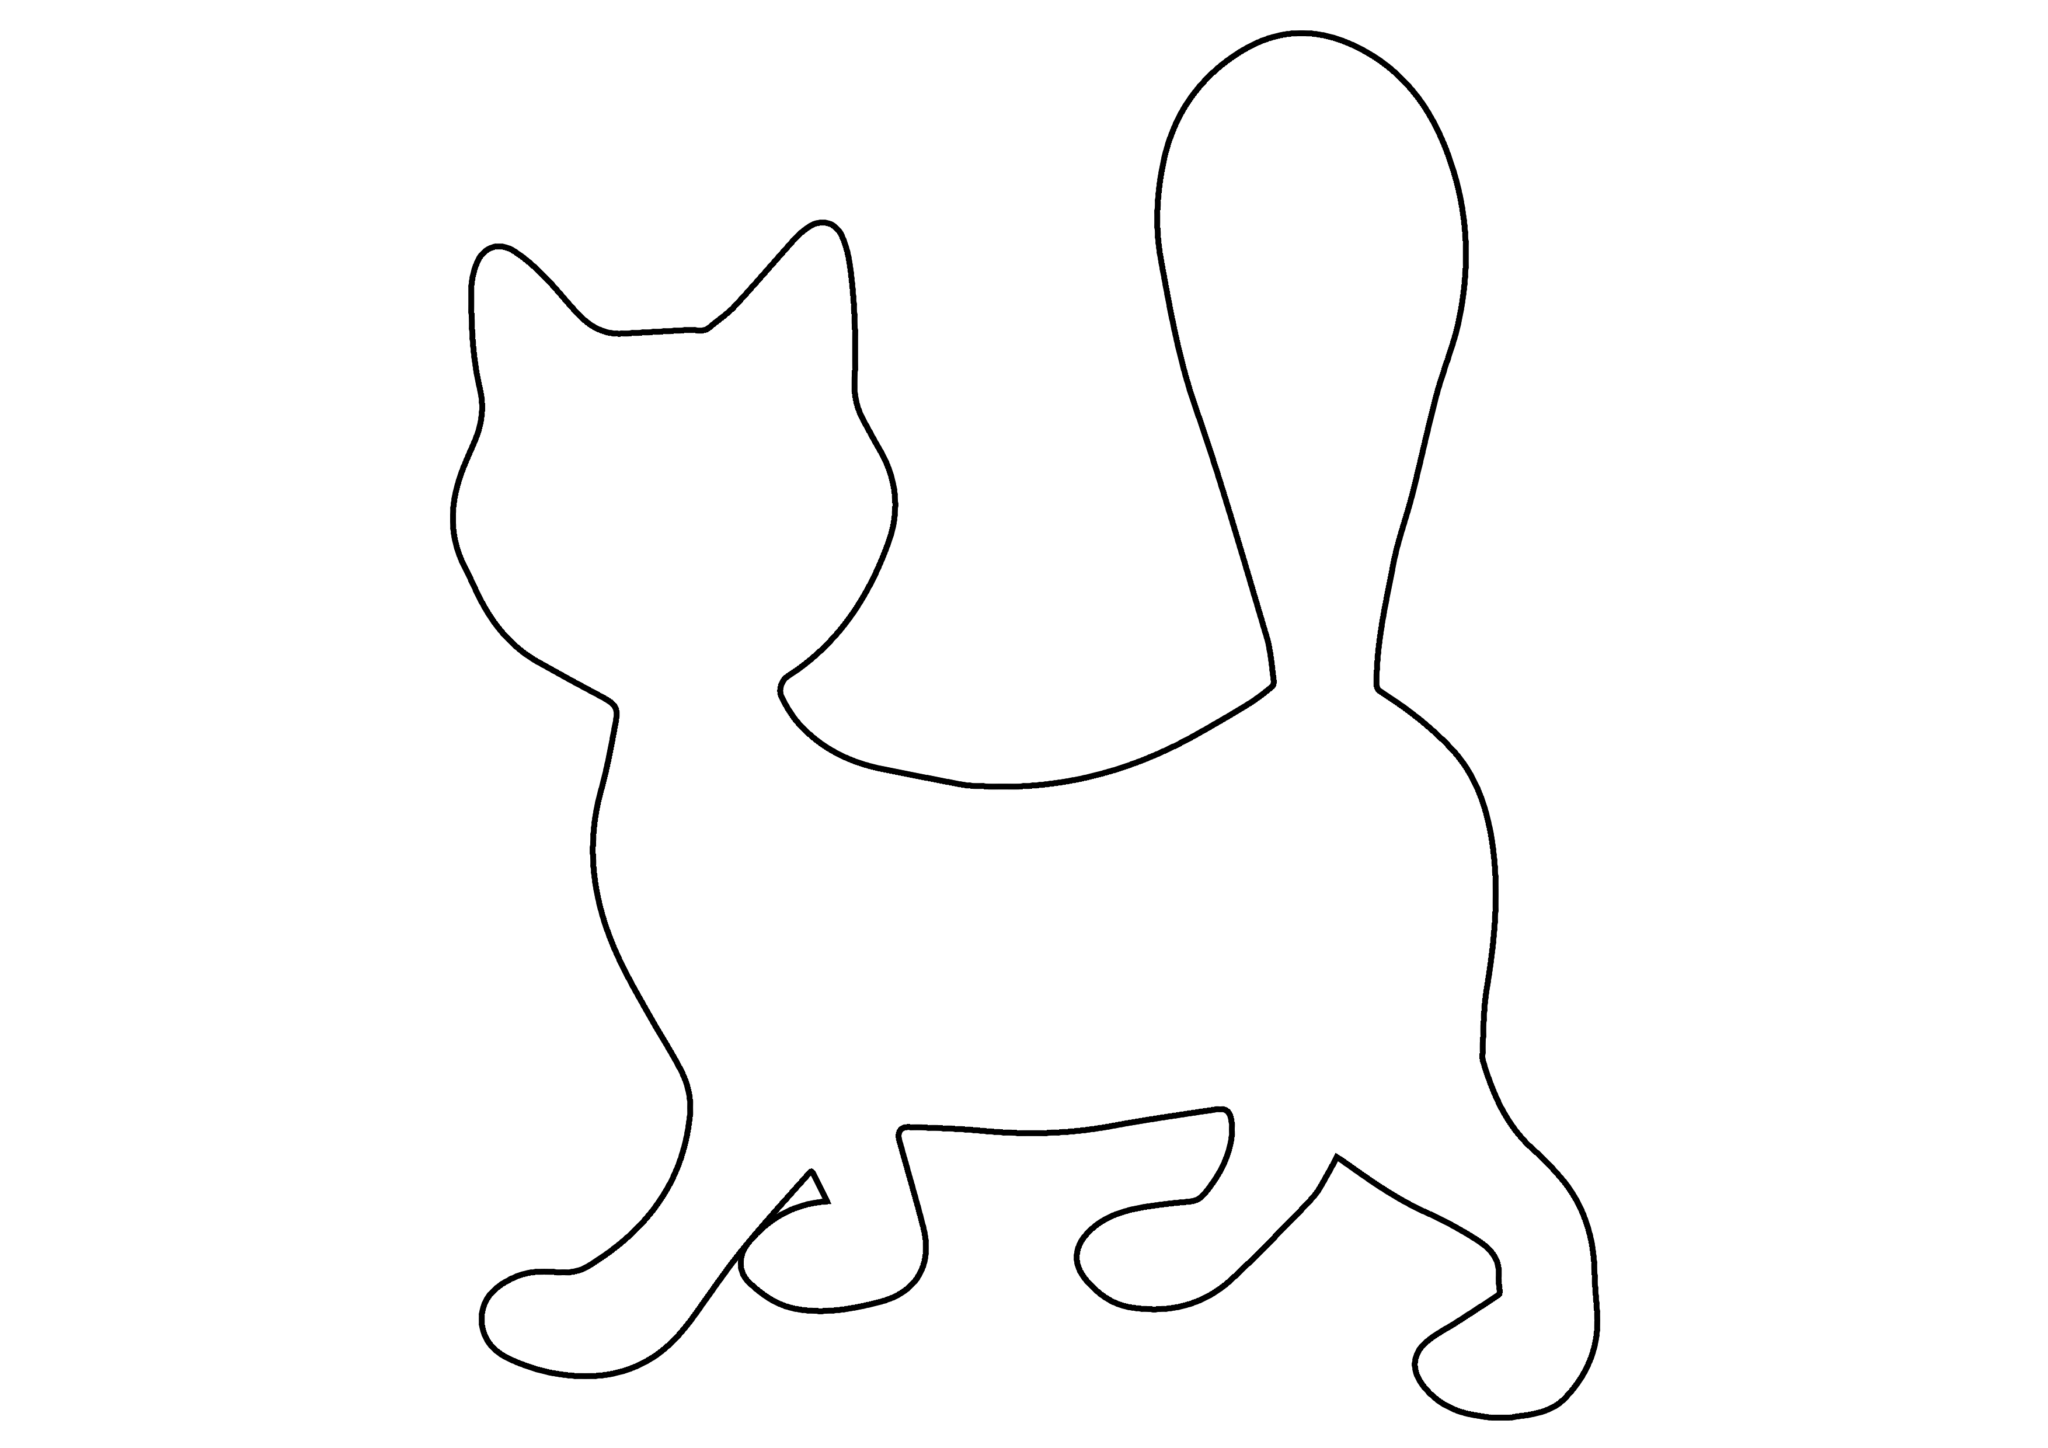 Аппликация кошка (55 идей + техники) для детского садика).